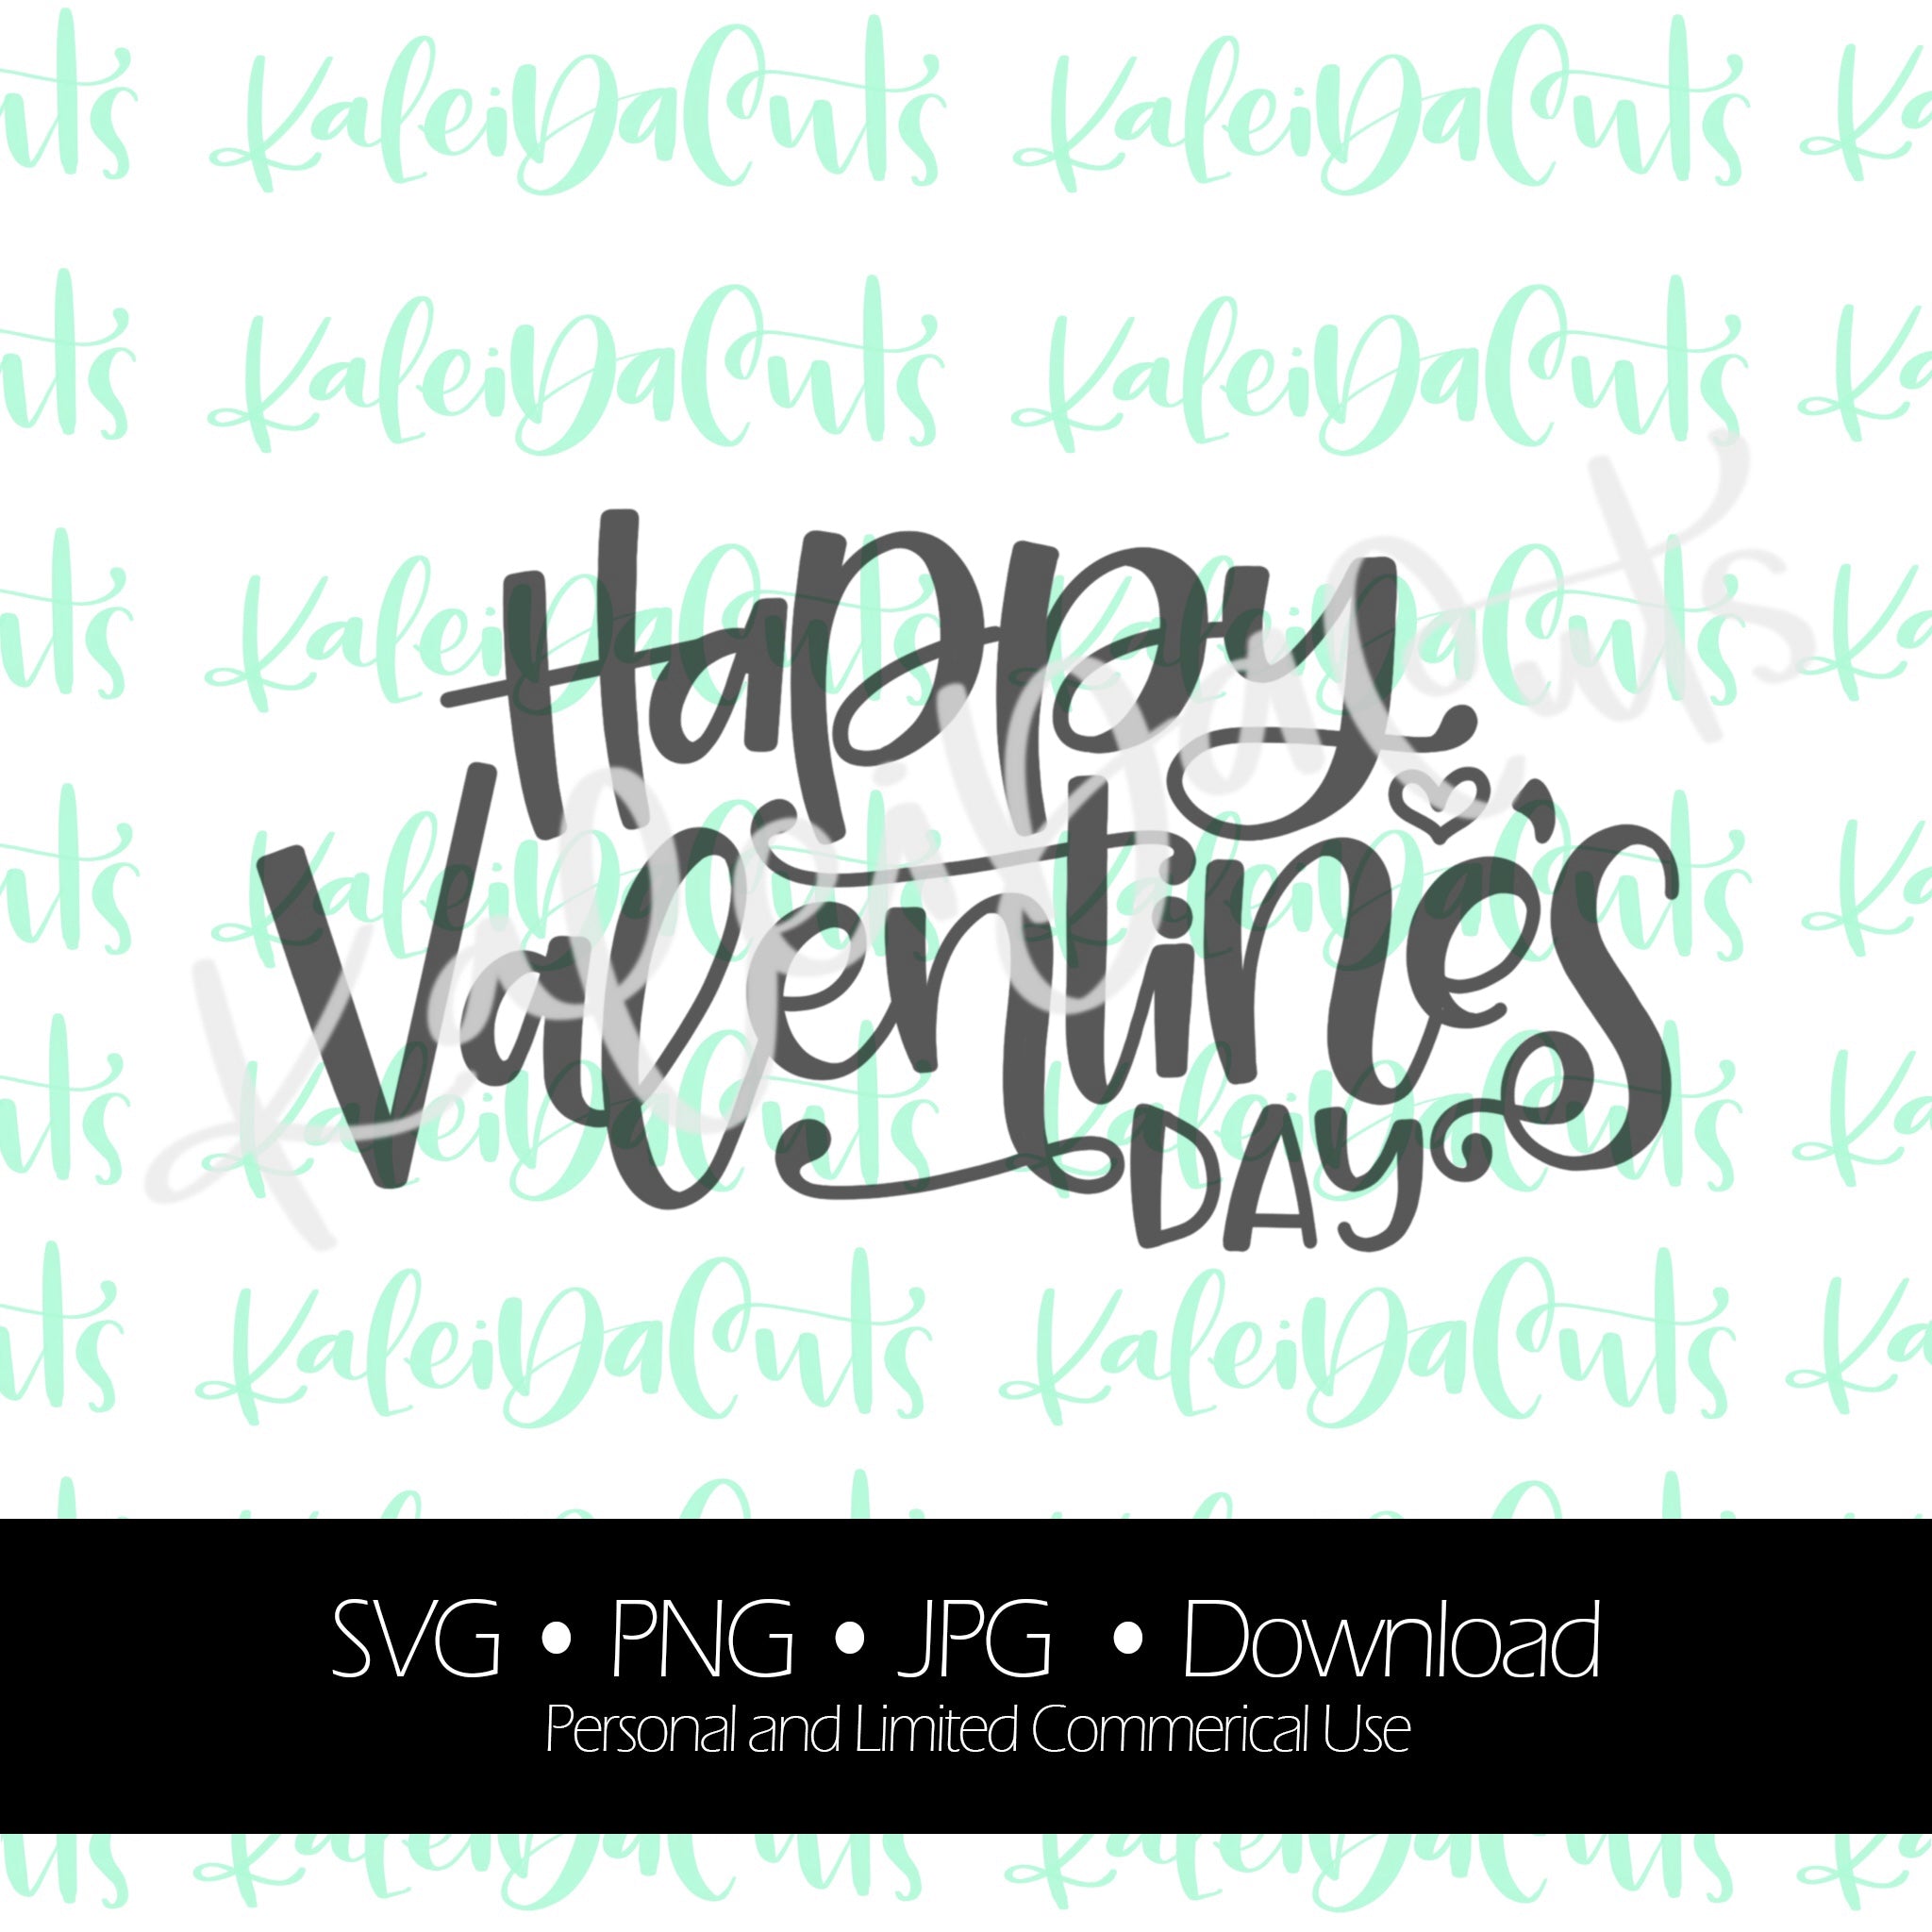 Valentines Day Digital Downloads